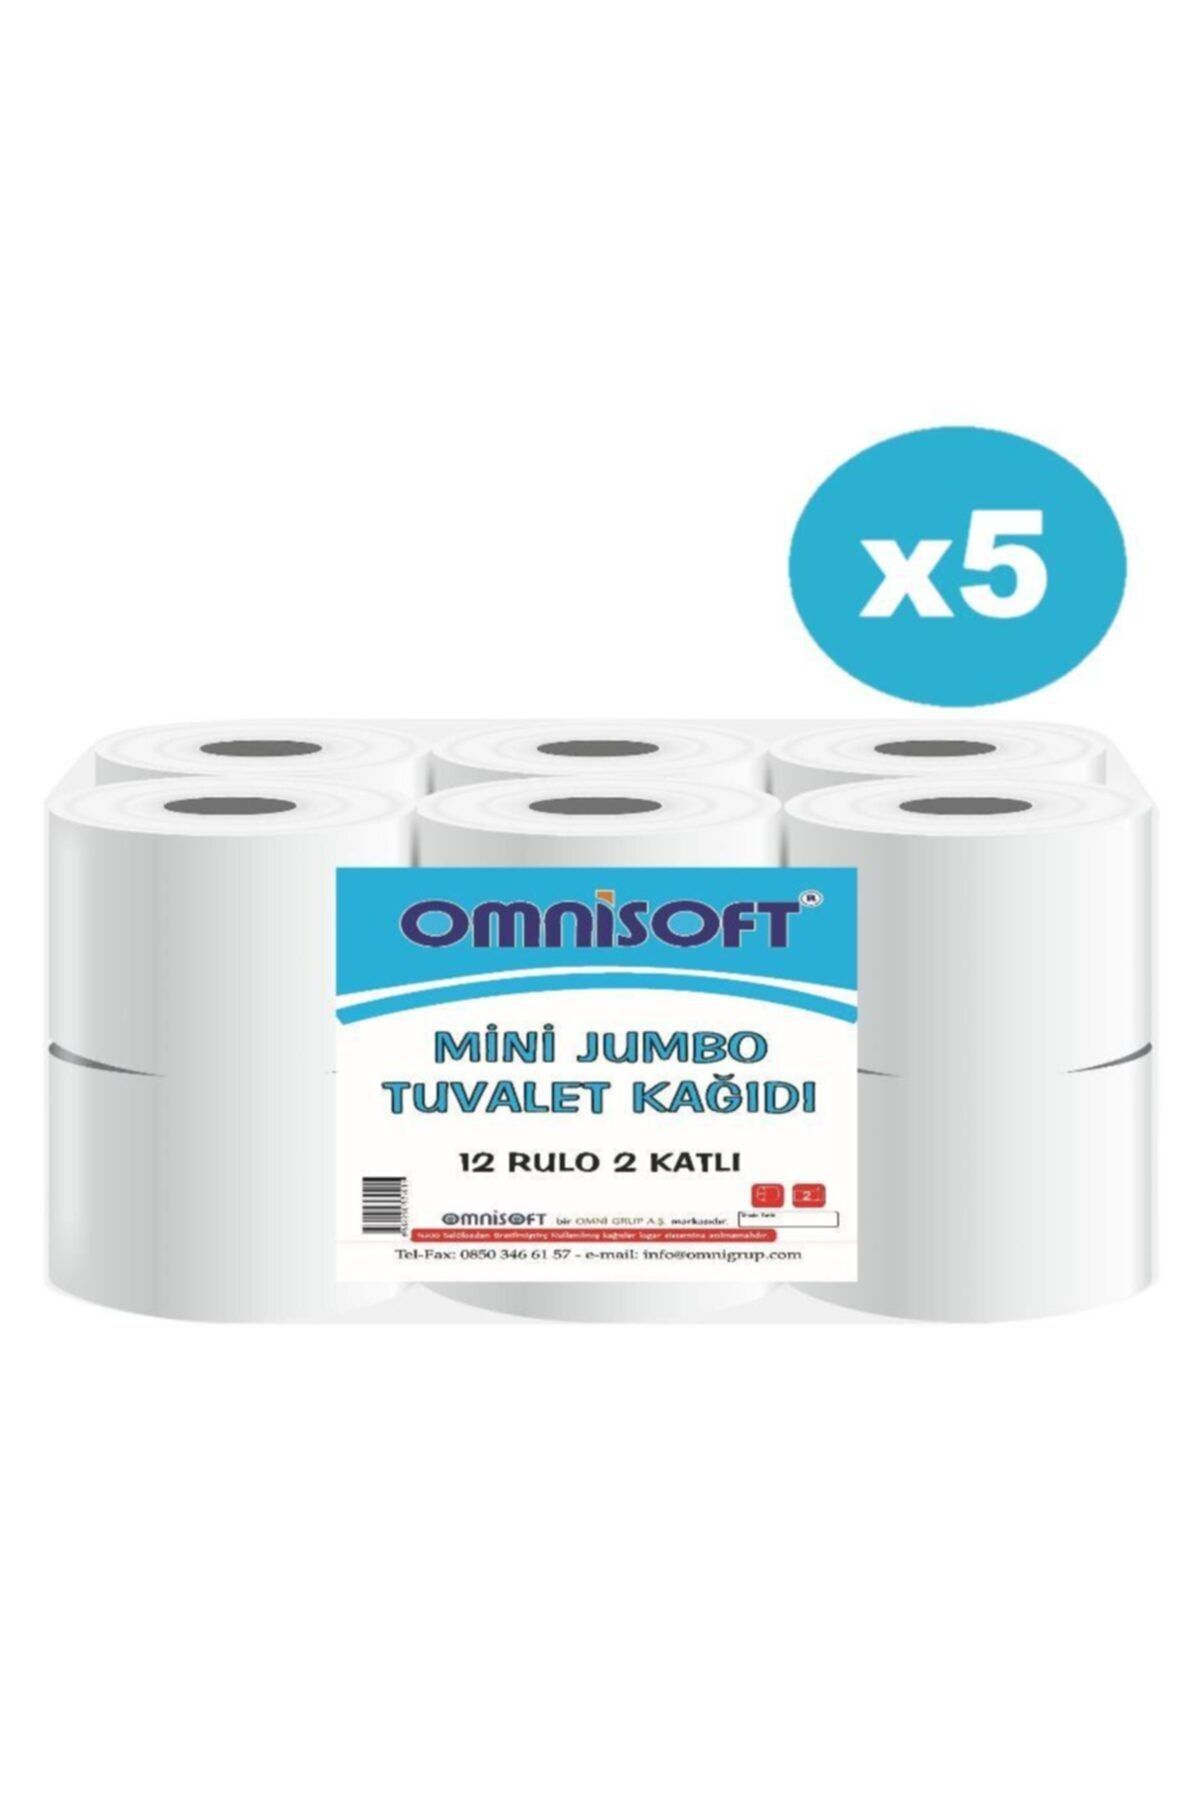 Omnisoft 5 Koli Mini Jumbo Tuvalet Kağıdı 60 Rulo